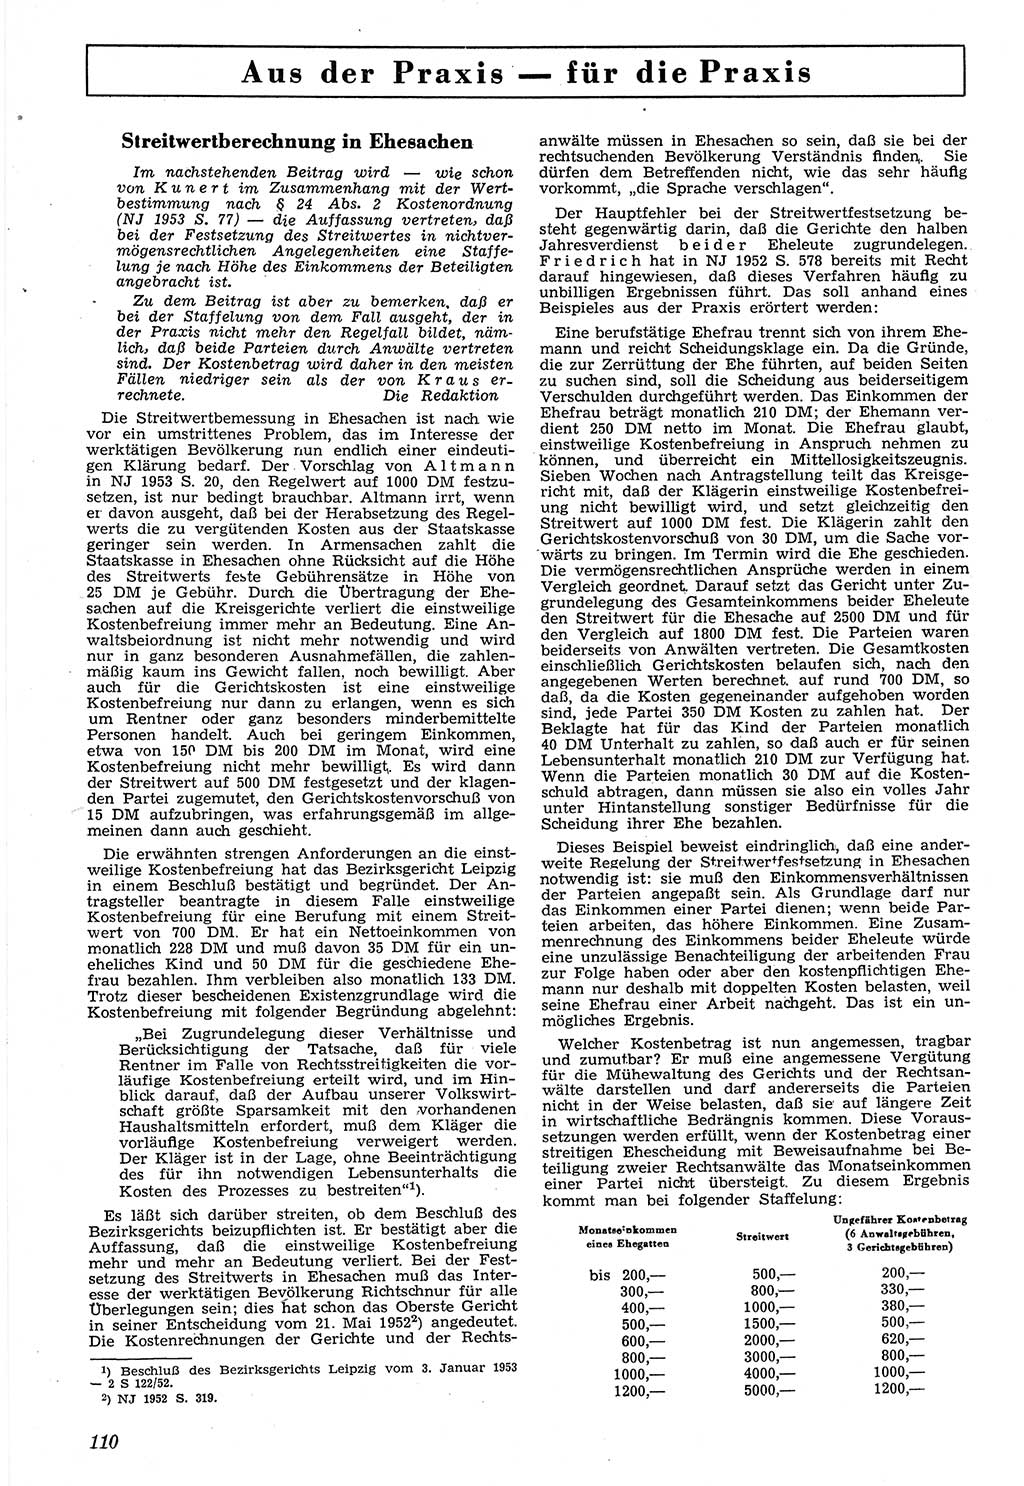 Neue Justiz (NJ), Zeitschrift für Recht und Rechtswissenschaft [Deutsche Demokratische Republik (DDR)], 7. Jahrgang 1953, Seite 110 (NJ DDR 1953, S. 110)